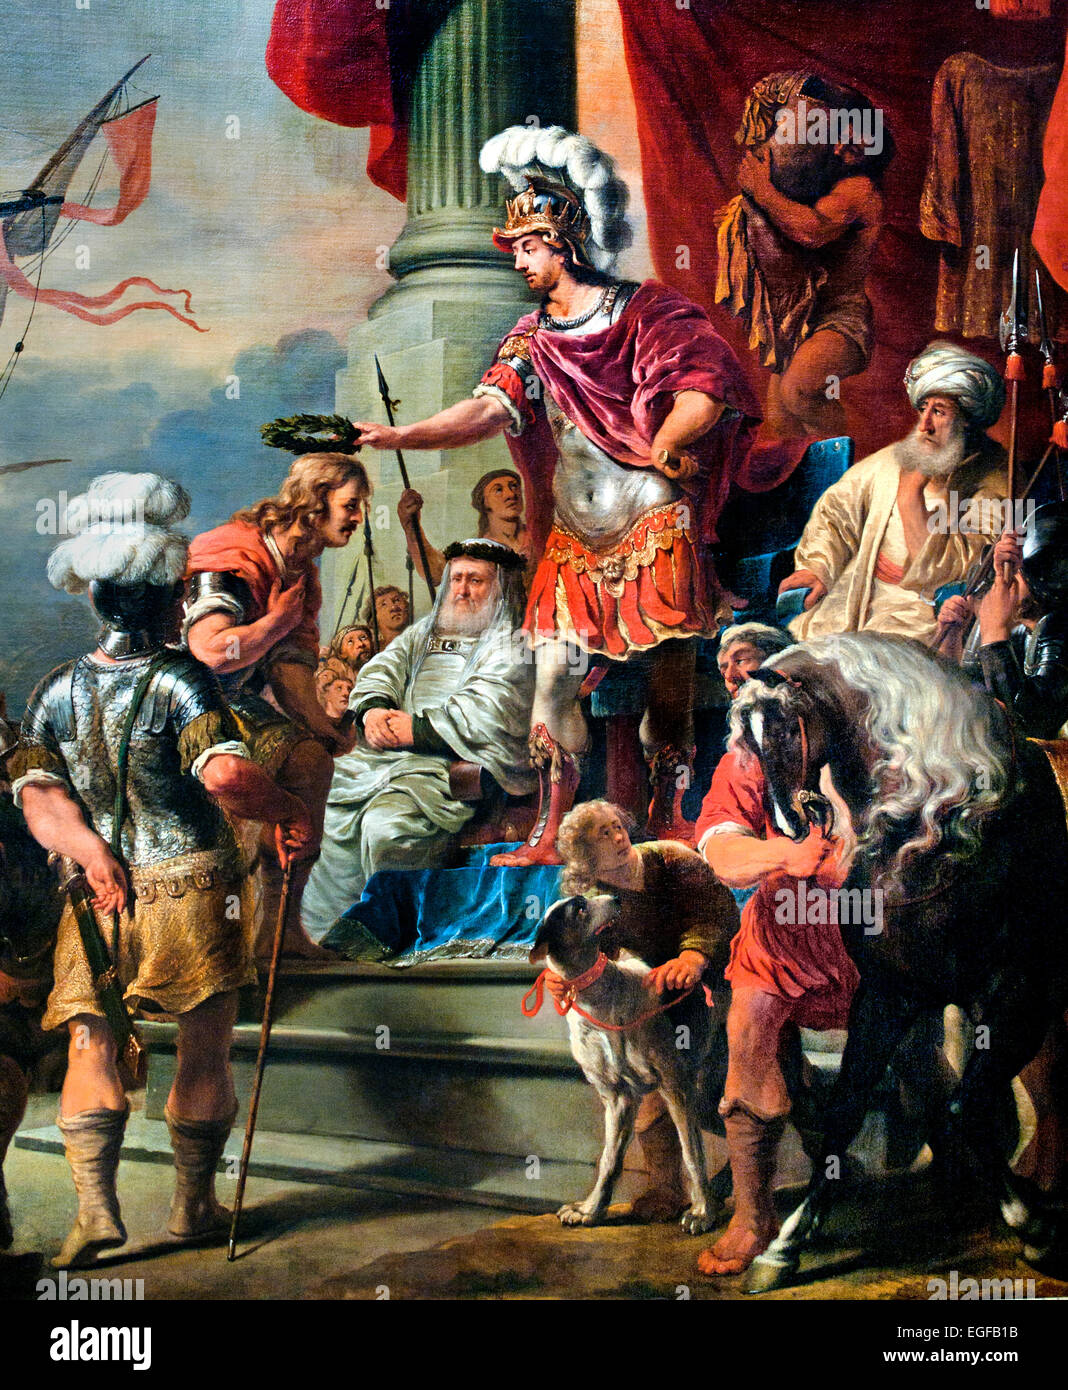 Enea presso la Corte di Latinus 1661 Ferdinand Bol 1616-1680 olandese Paesi Bassi ('Eneide di Virgilio. Enea si congratula con uno di quattro navi' capitani che hanno gareggiato in una gara. Tutti e quattro sono stati premiati al loro ritorno, anche il capitano che ha gettato il suo timoniere fuoribordo per aver disobbedito ad un ordine. Il dipinto è stato accompagnato da una poesia di Vondel, ) Foto Stock